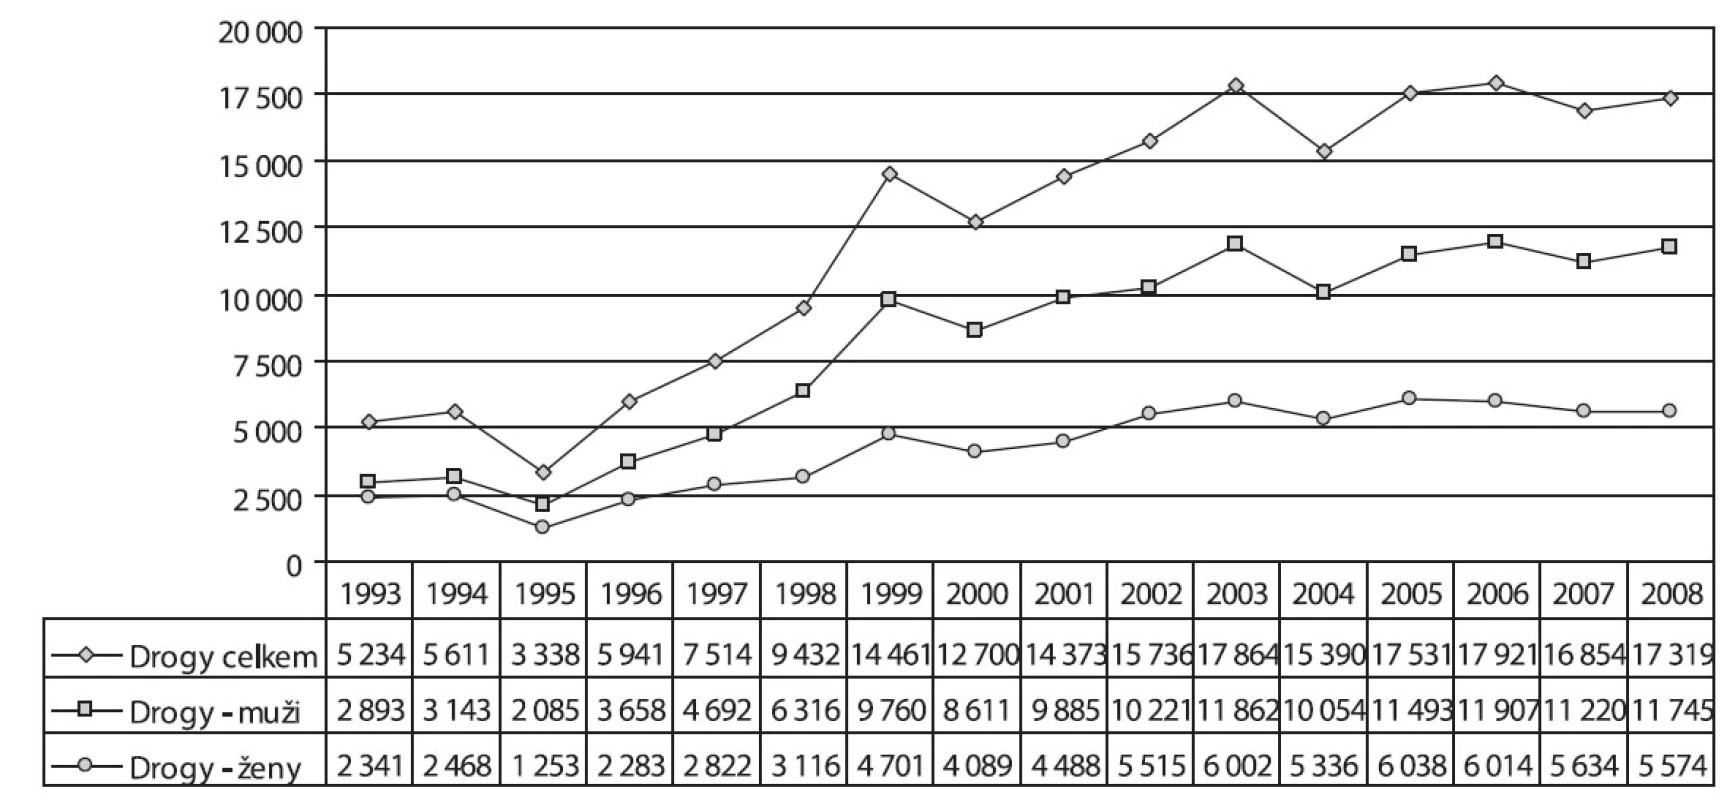 Vývoj pacientů užívajících nealkoholové drogy v letech 1993–2008
Fig. 5. Trends in the numbers of non-alcohol drug users treated, by sex, 1993–2008